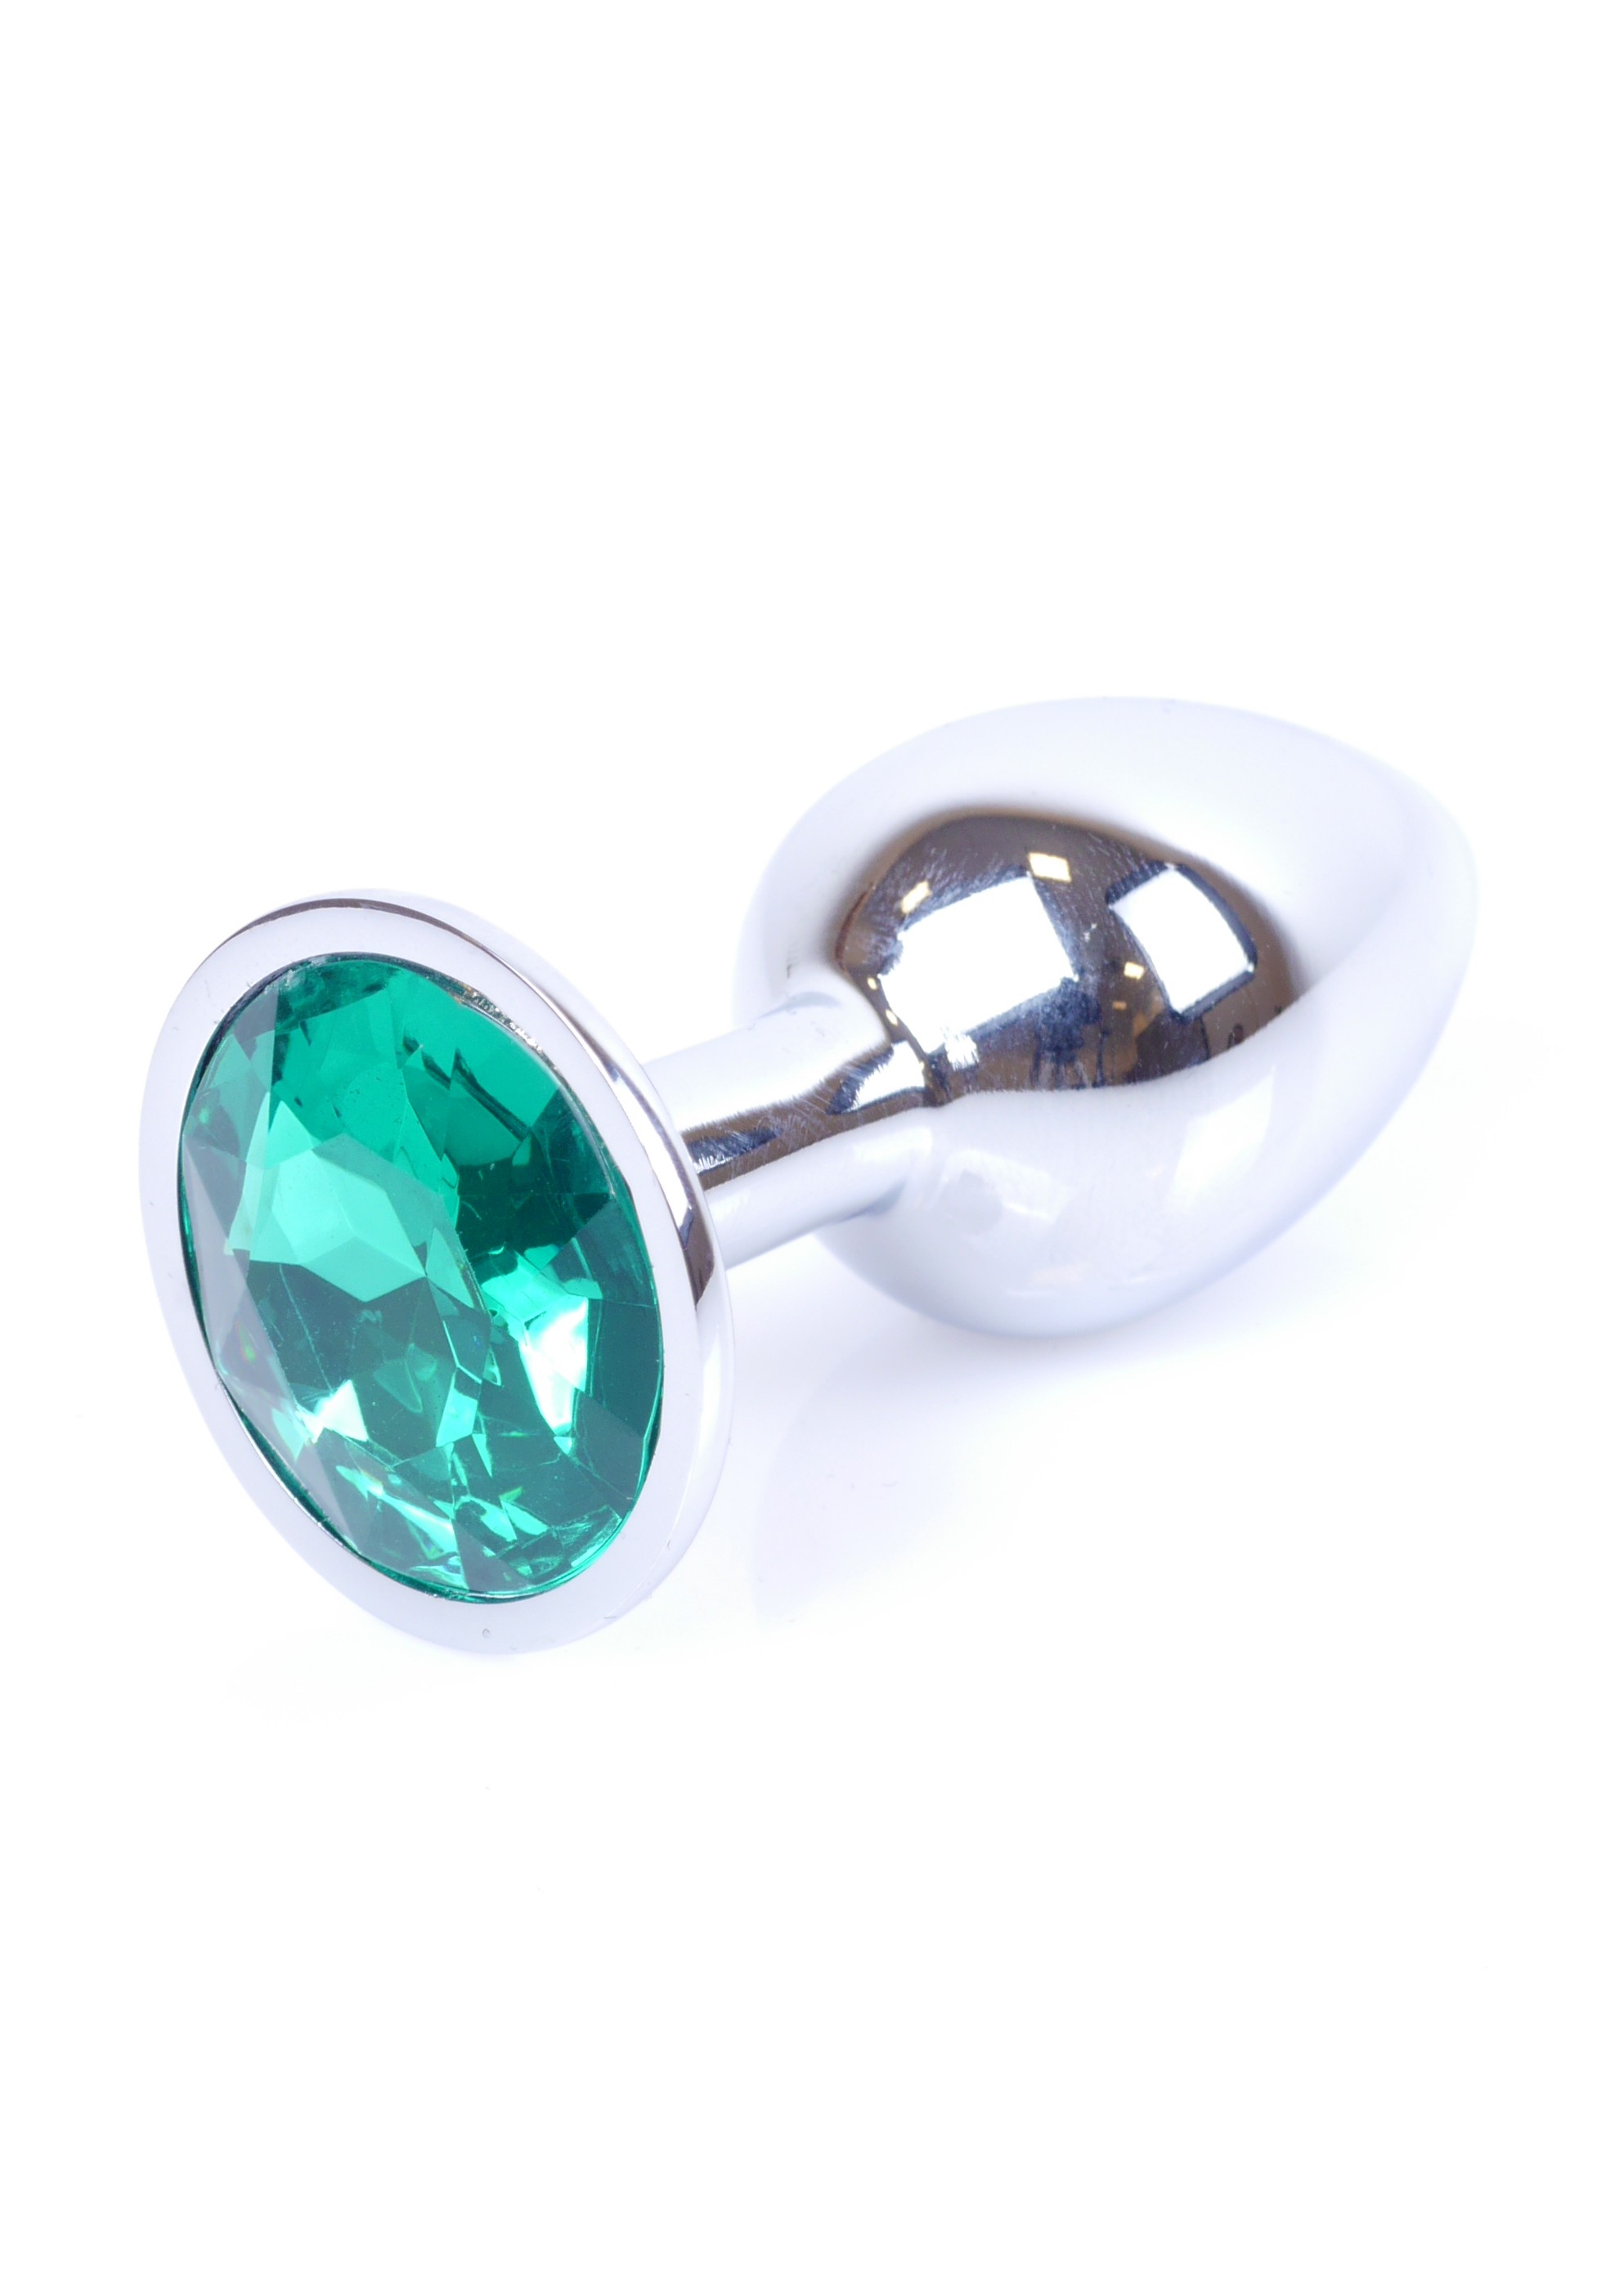 Boss Series Jewellery Silver Green - Korek analny, zielony ▶️▶️ DYSKRETNIE ▶️ GWARANCJA ▶️ PRZESYŁKA 24h ▶️